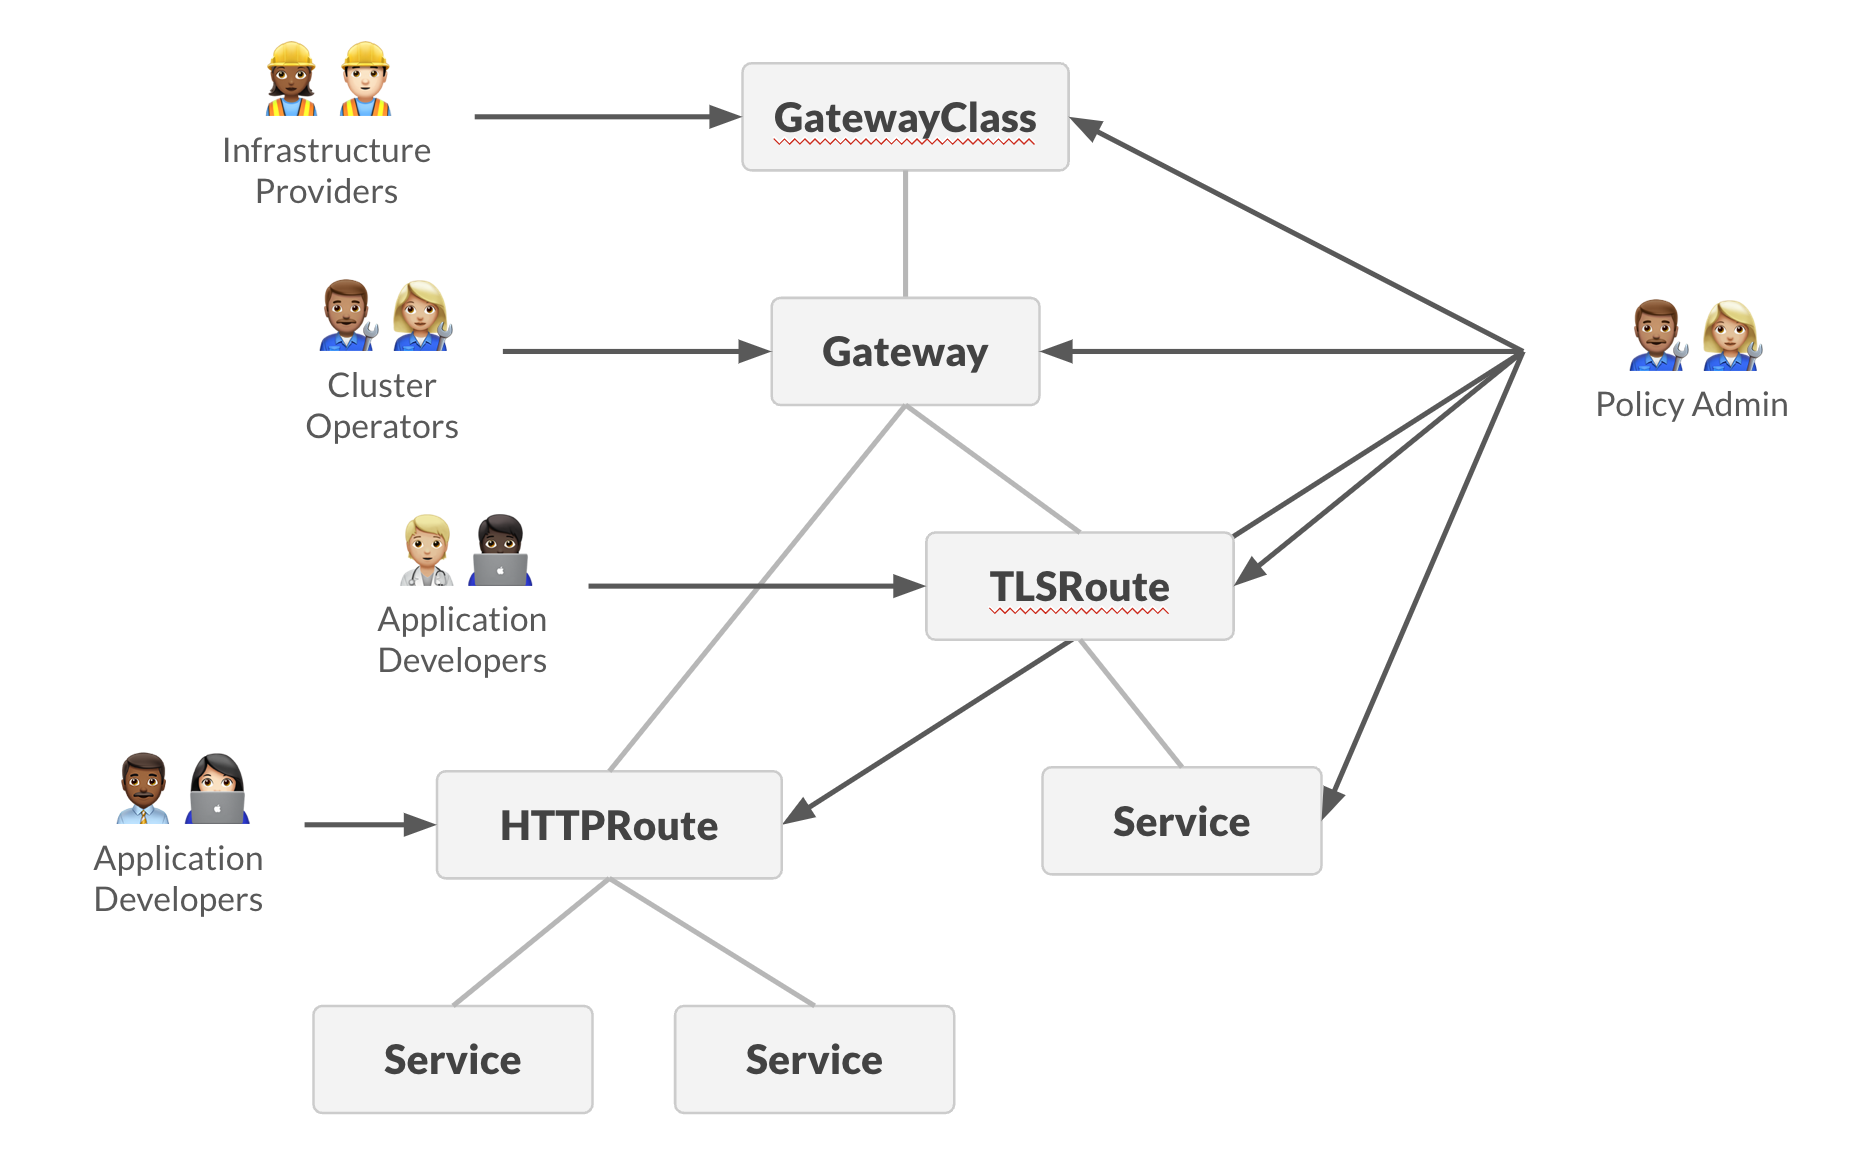 Gateway API diagram with Policy Admin